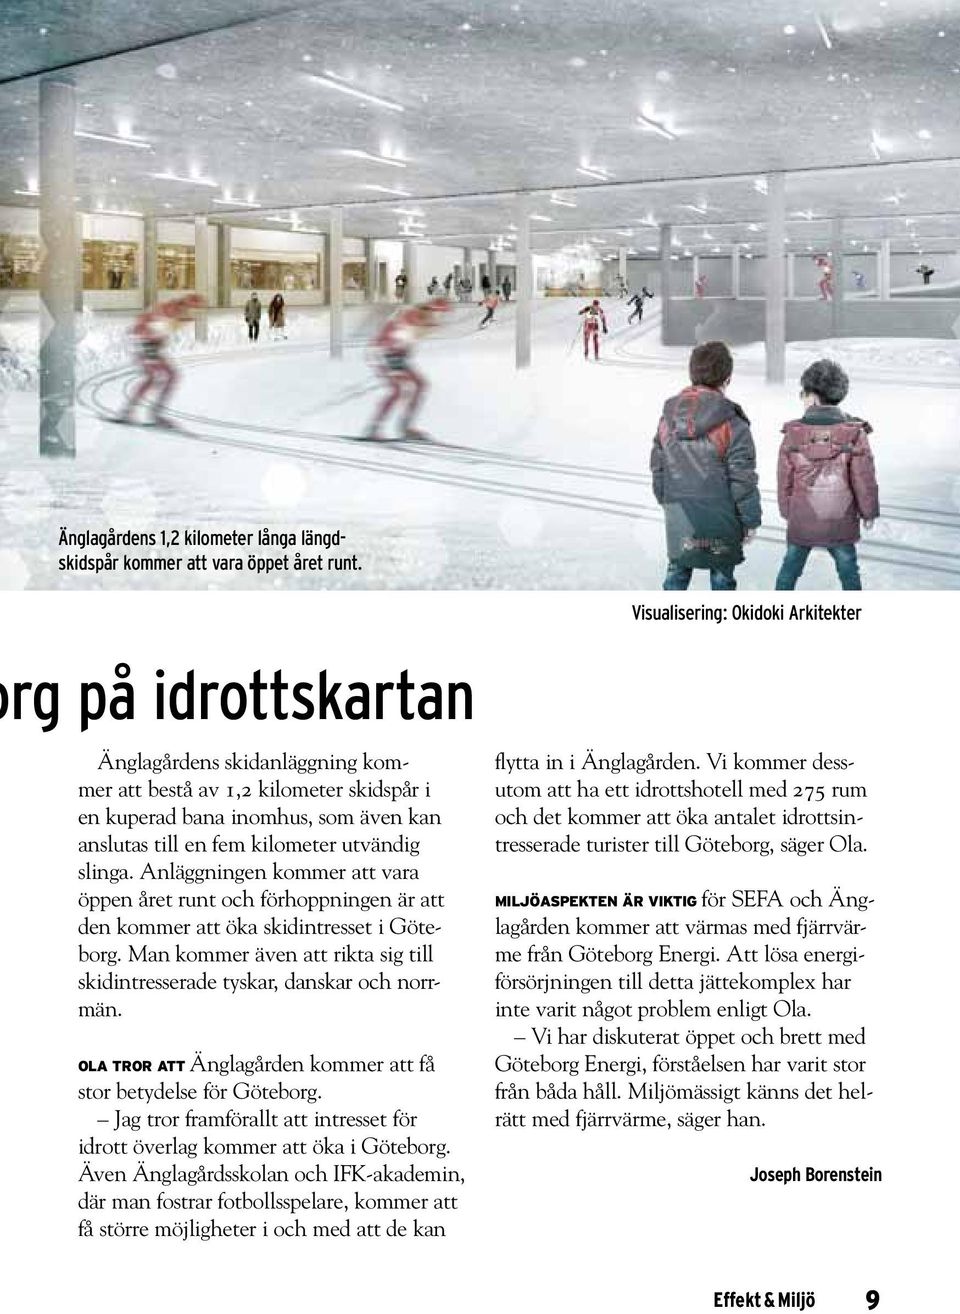 Anläggningen kommer att vara öppen året runt och förhoppningen är att den kommer att öka skidintresset i Göteborg. Man kommer även att rikta sig till skidintresserade tyskar, danskar och norrmän.